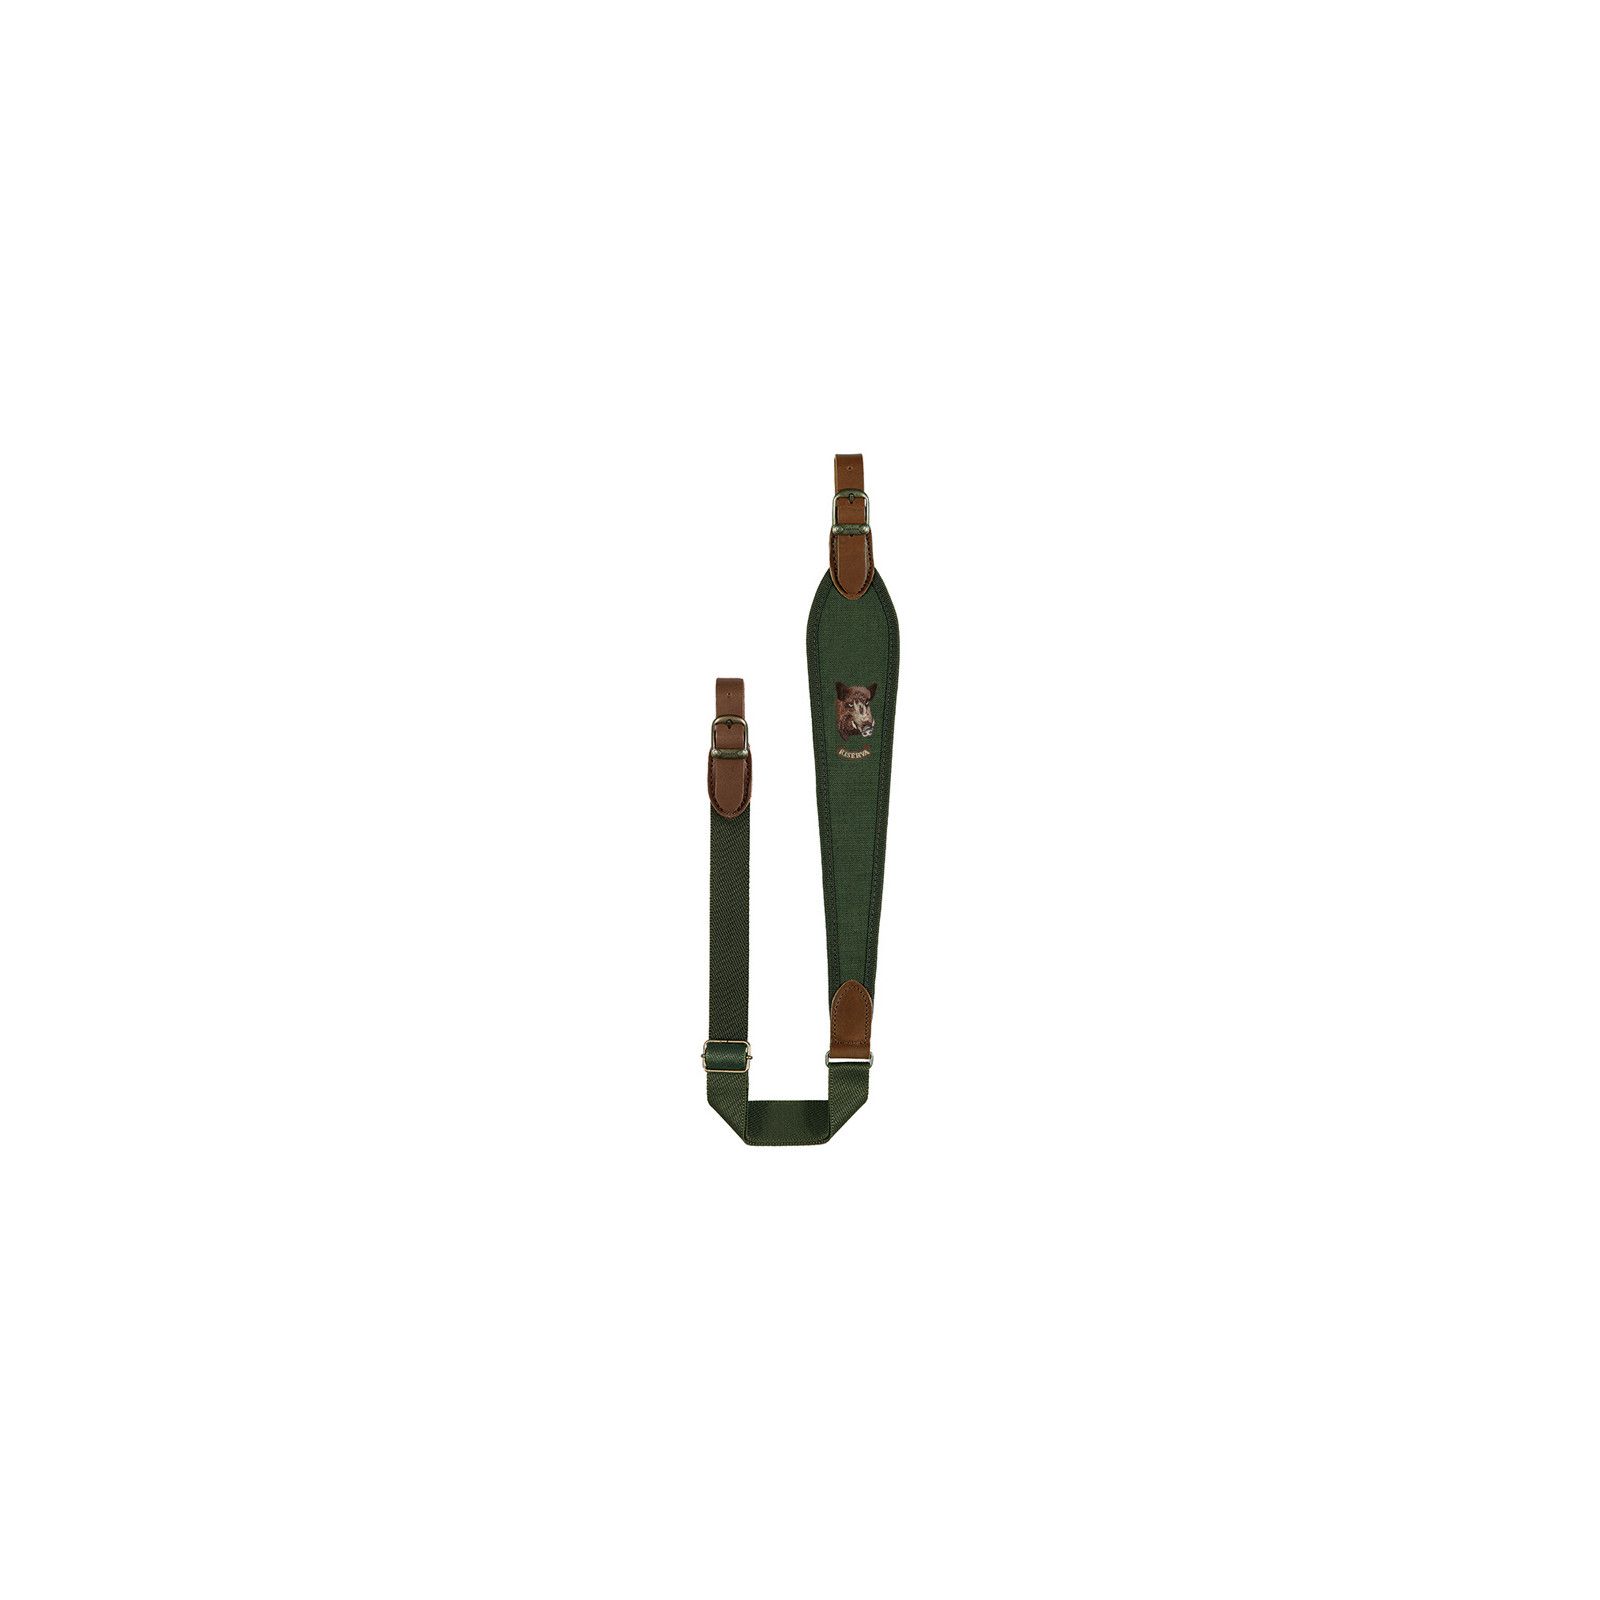 Portafusil rifle cordura riserva motivo jabali verde Riserva